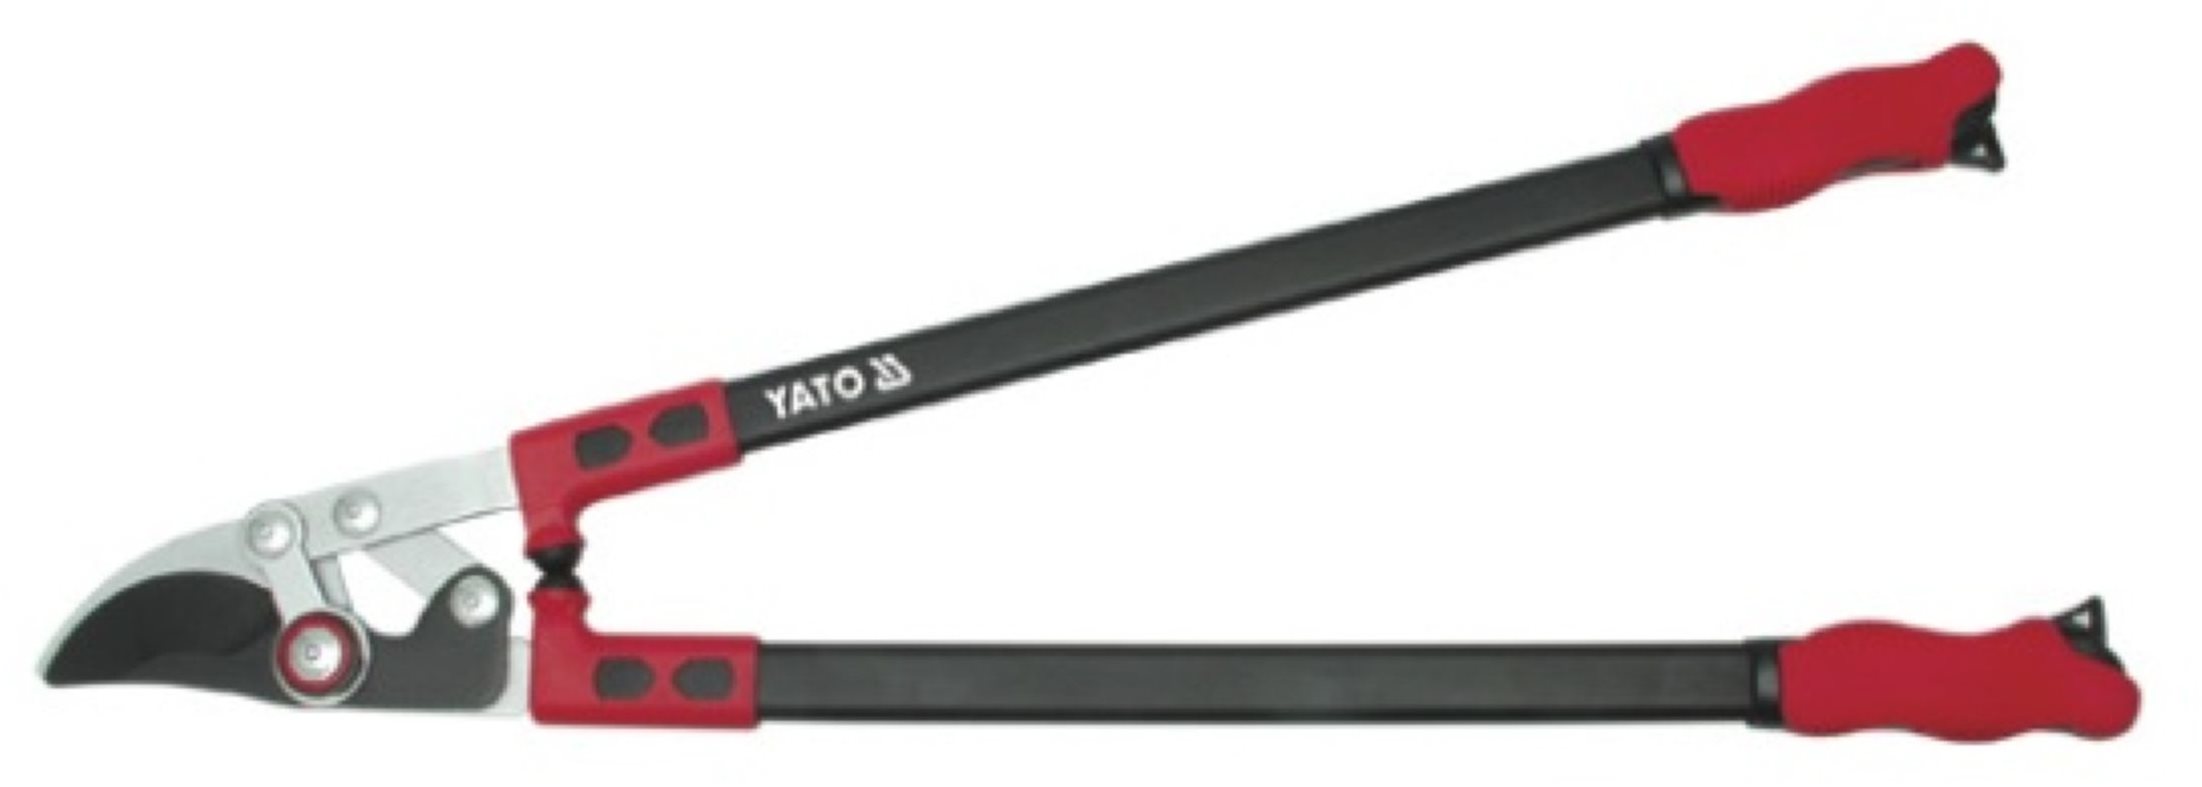 Ágvágó YATO YT-8835